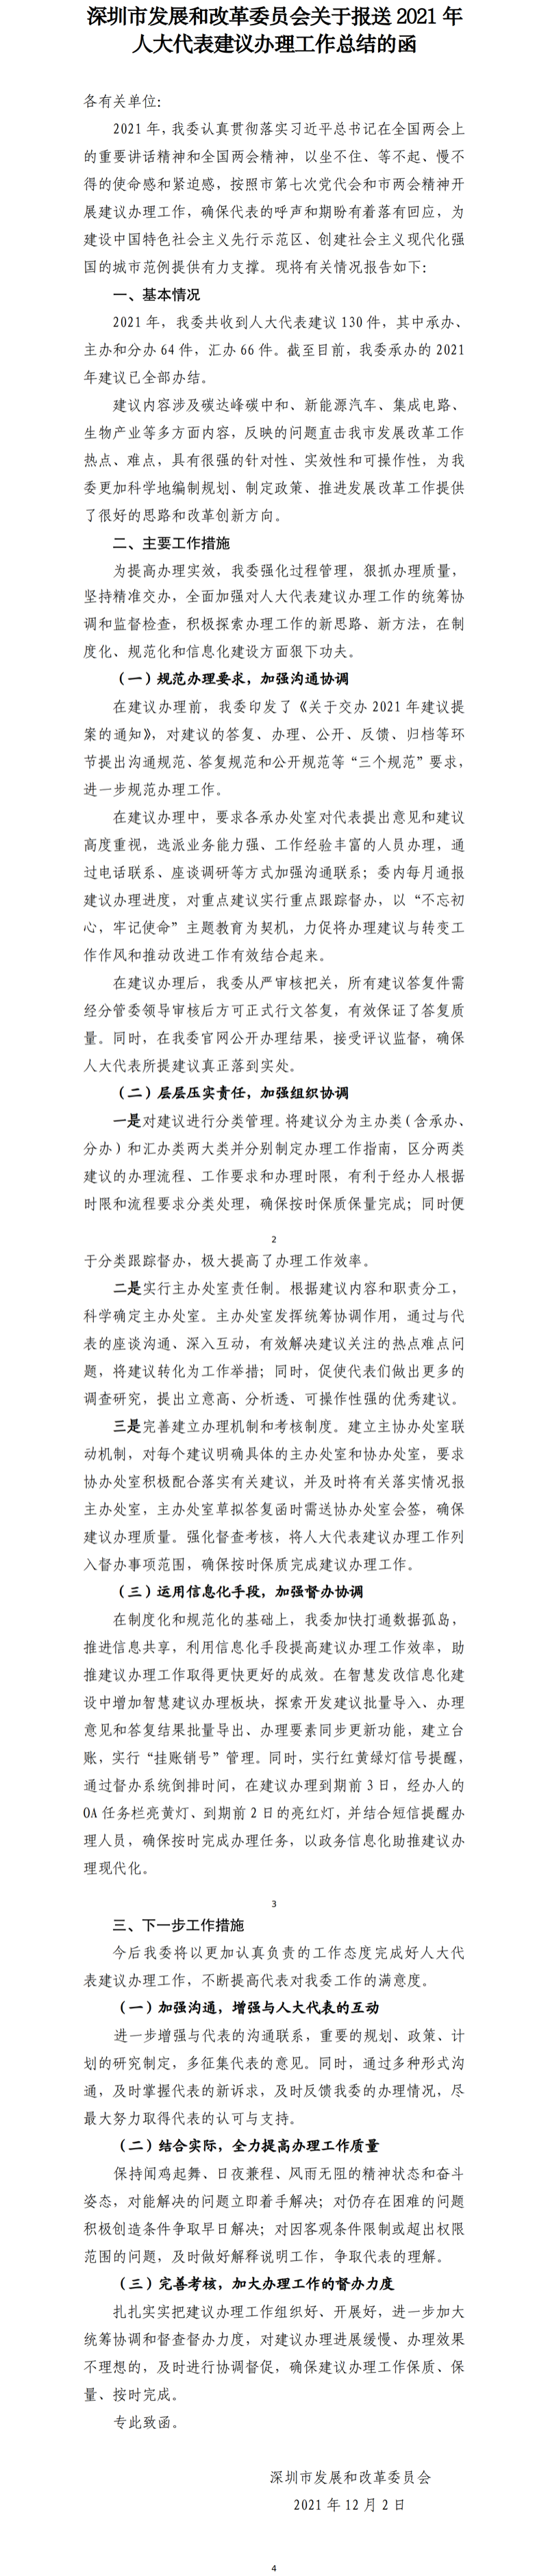 深圳市发展和改革委员会关于报送2021年人大代表建议办理工作总结的函 .png